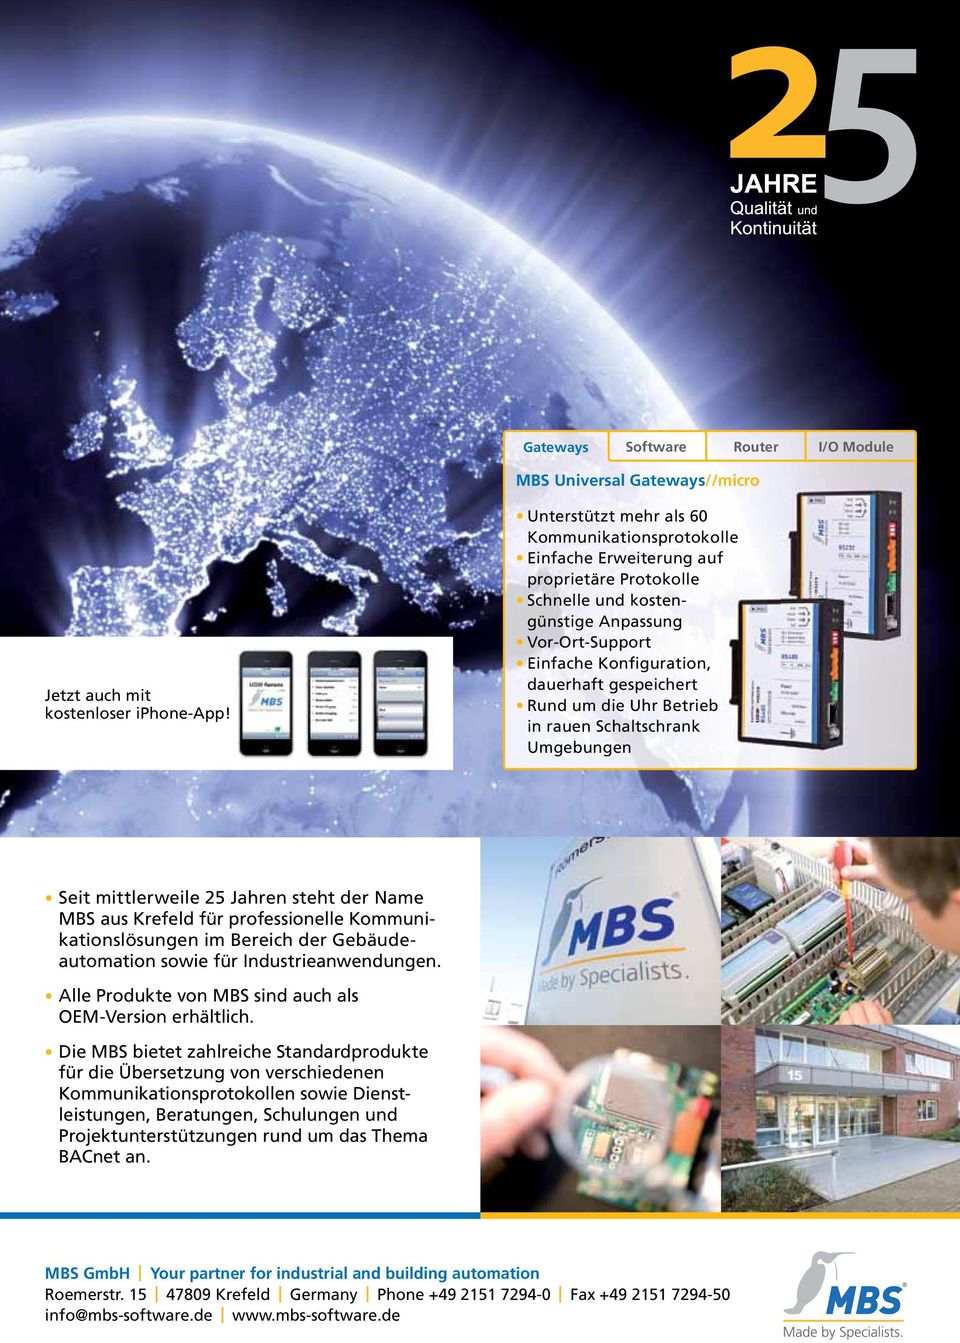 Rund um die Uhr Betrieb in rauen Schaltschrank Umgebungen Seit mittlerweile 25 Jahren steht der Name MBS aus Krefeld für professionelle Kommunikationslösungen im Bereich der Gebäudeautomation sowie